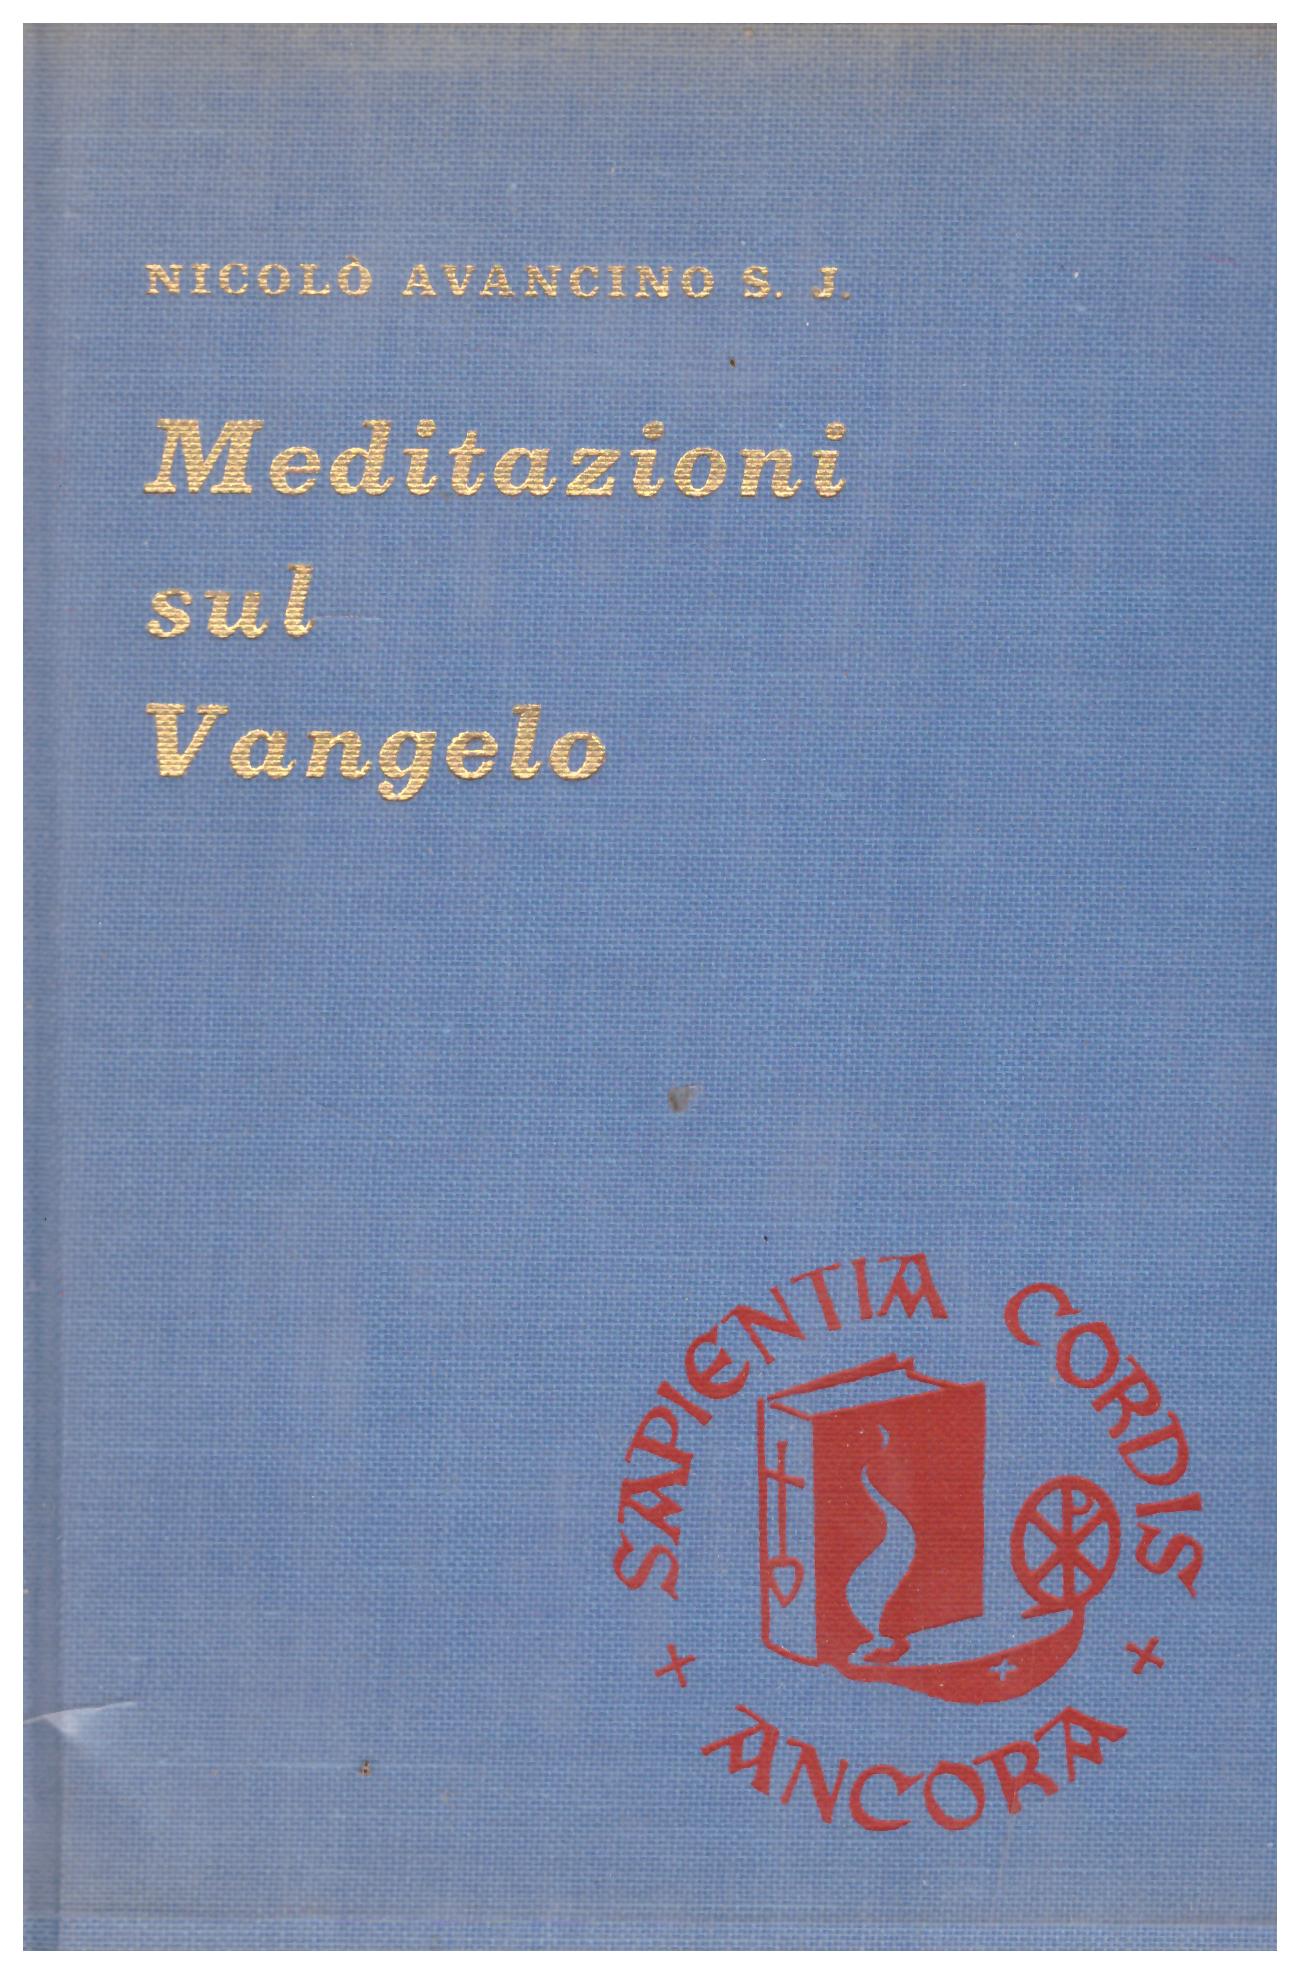 Titolo: Meditazioni sul Vangelo Autore: Nicolò Avancino Editore: Ancorà, Milano 1965